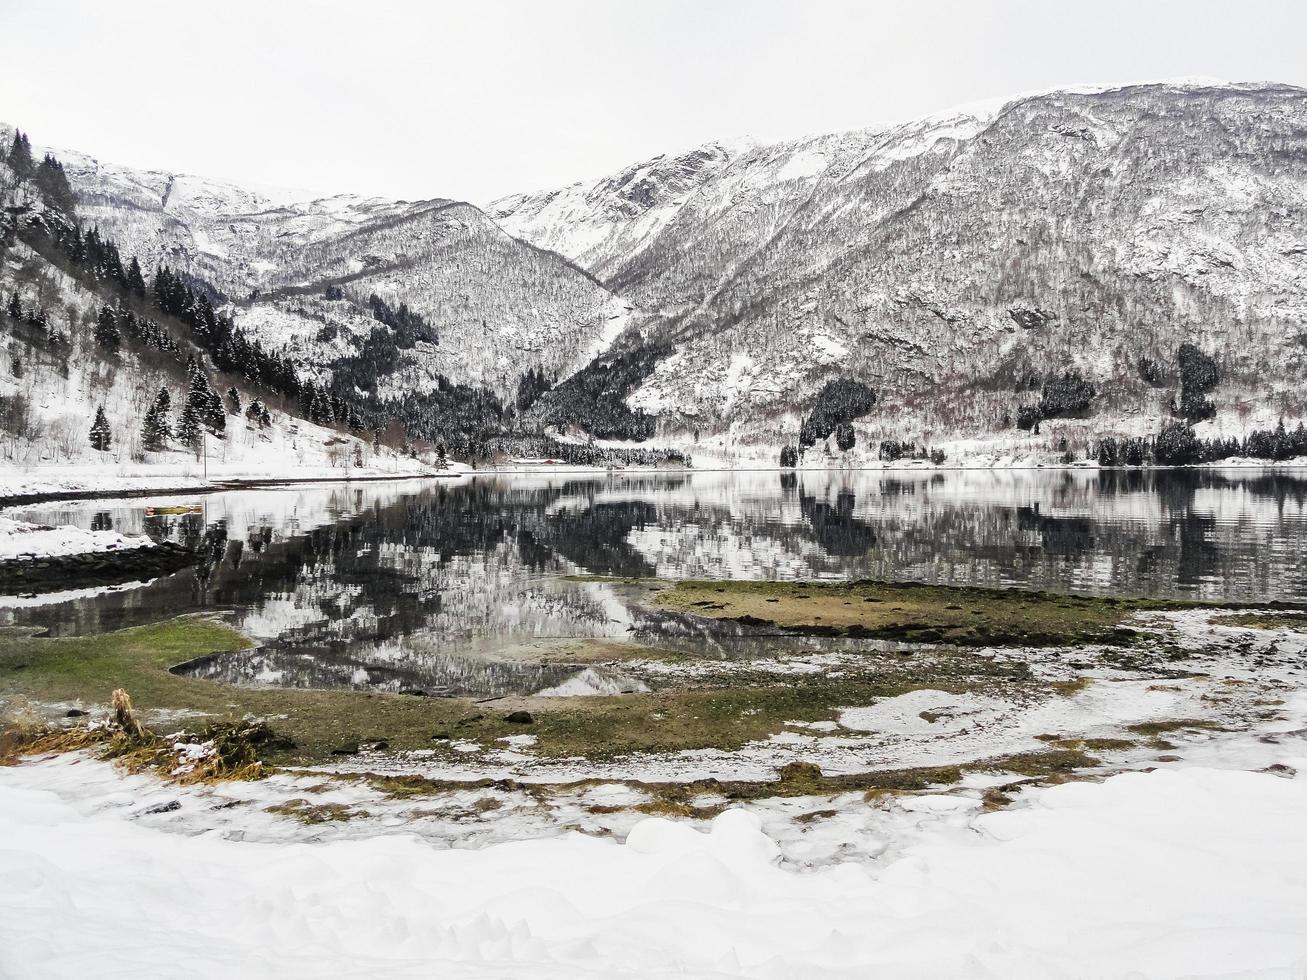 paysage d'hiver à la rivière du lac fjord gelé, framfjorden norvège. photo